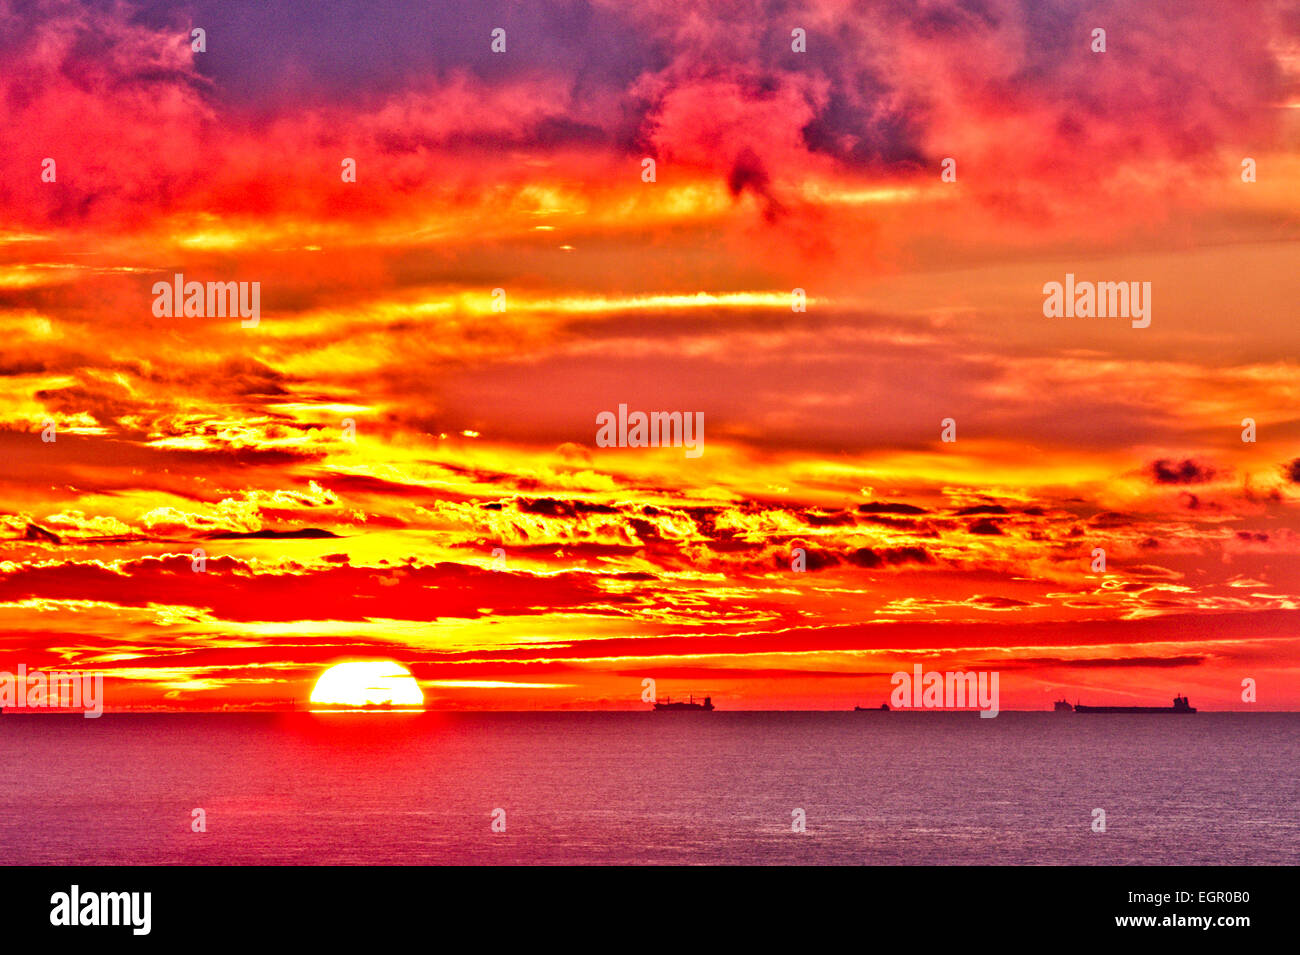 Il canale inglese visto da dover con l'alba in uno spettacolare cielo rosso e giallo su Calais e la costa francese. Autocisterne che navigano all'orizzonte. Foto Stock